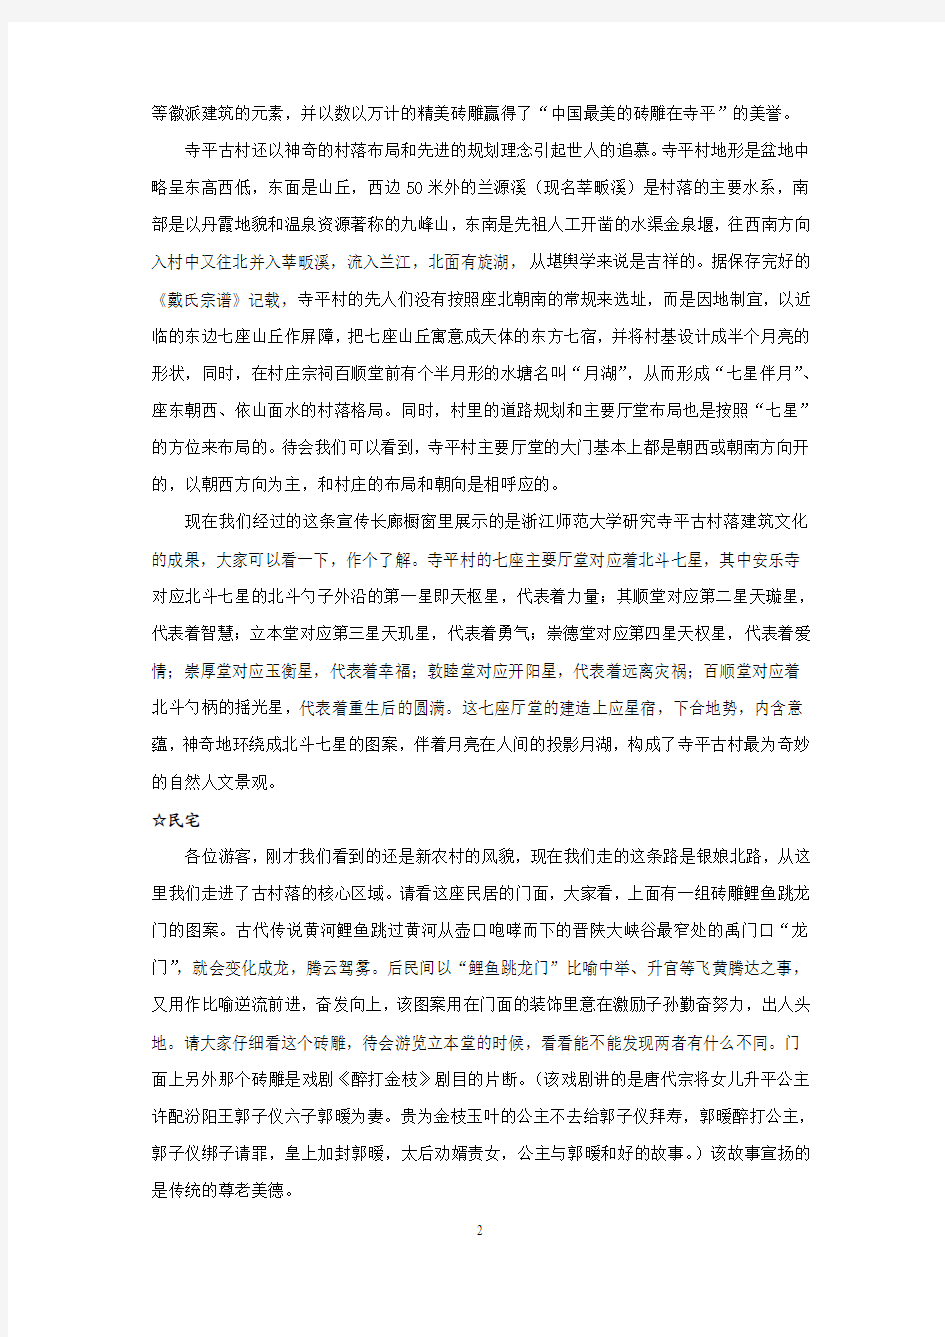 寺平村景点解说词,刘2013年1月18日定稿